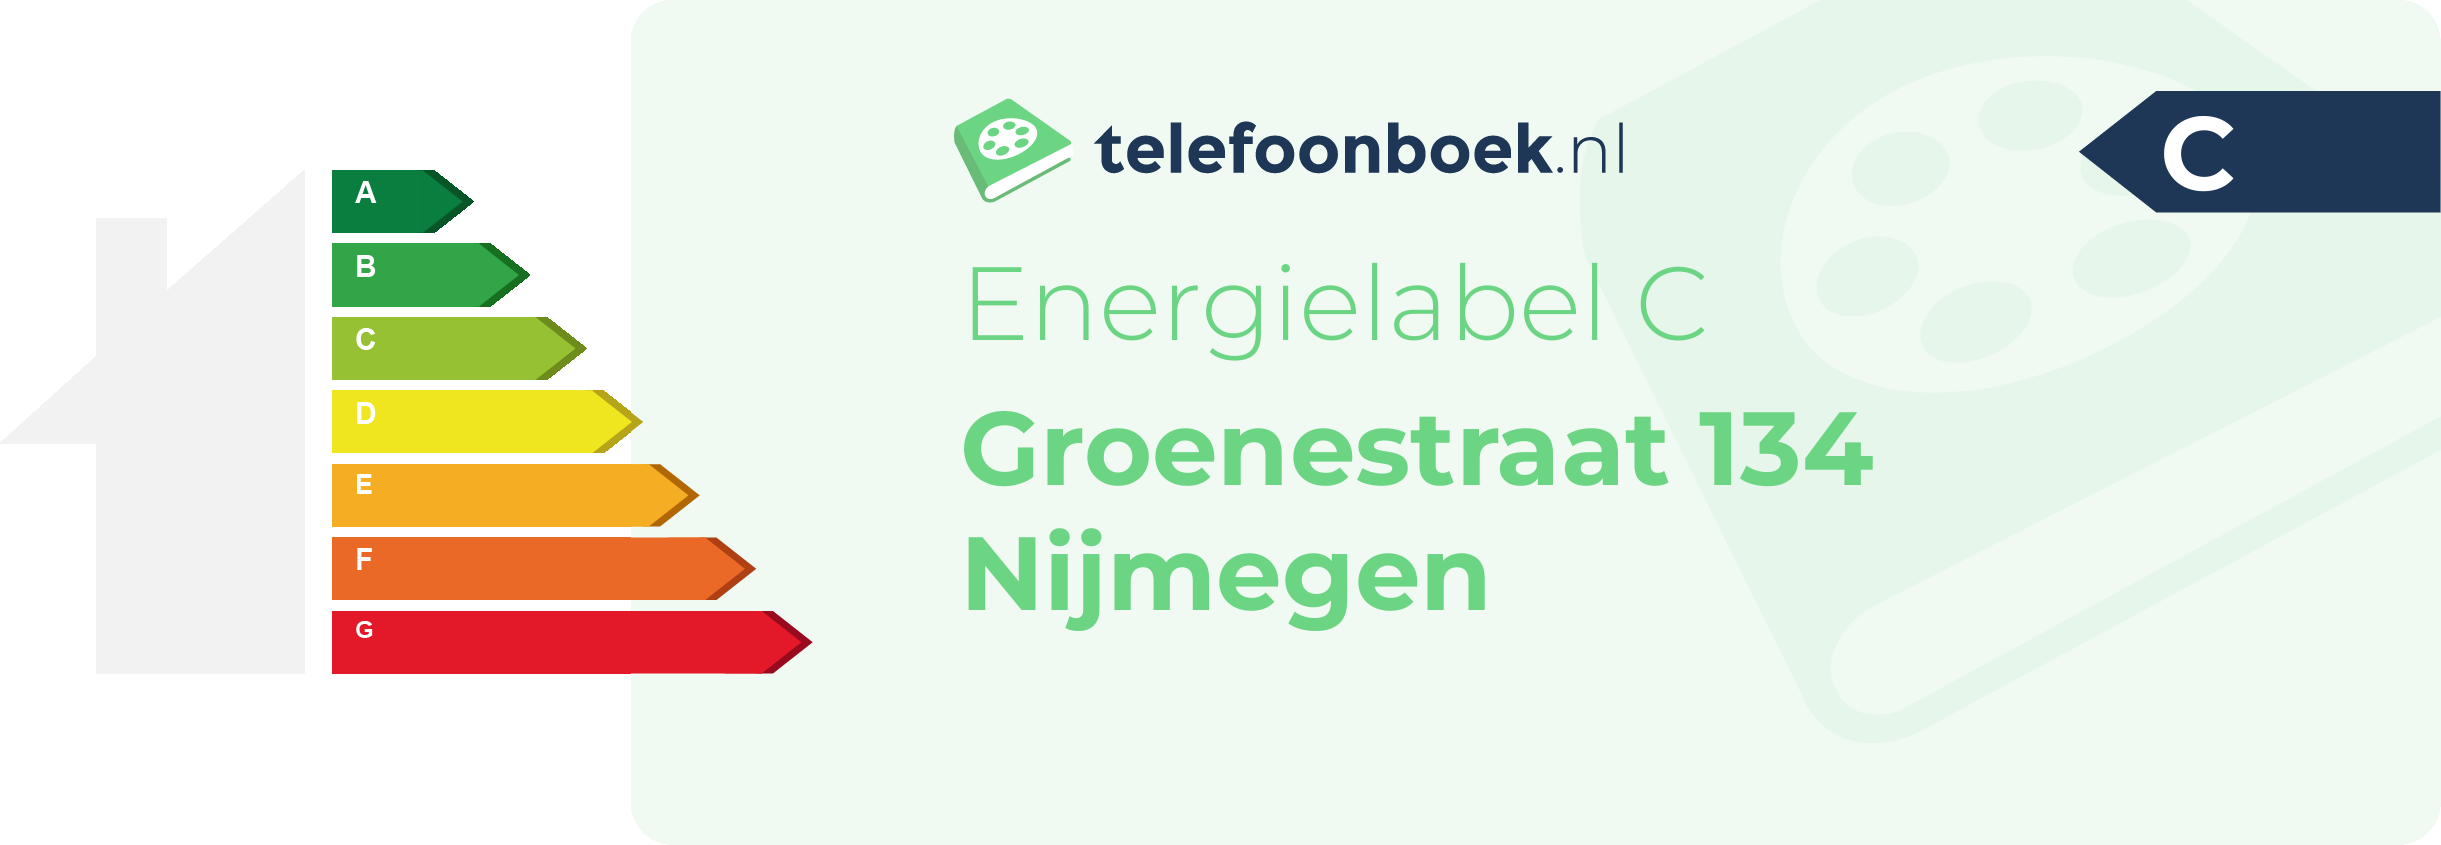 Energielabel Groenestraat 134 Nijmegen